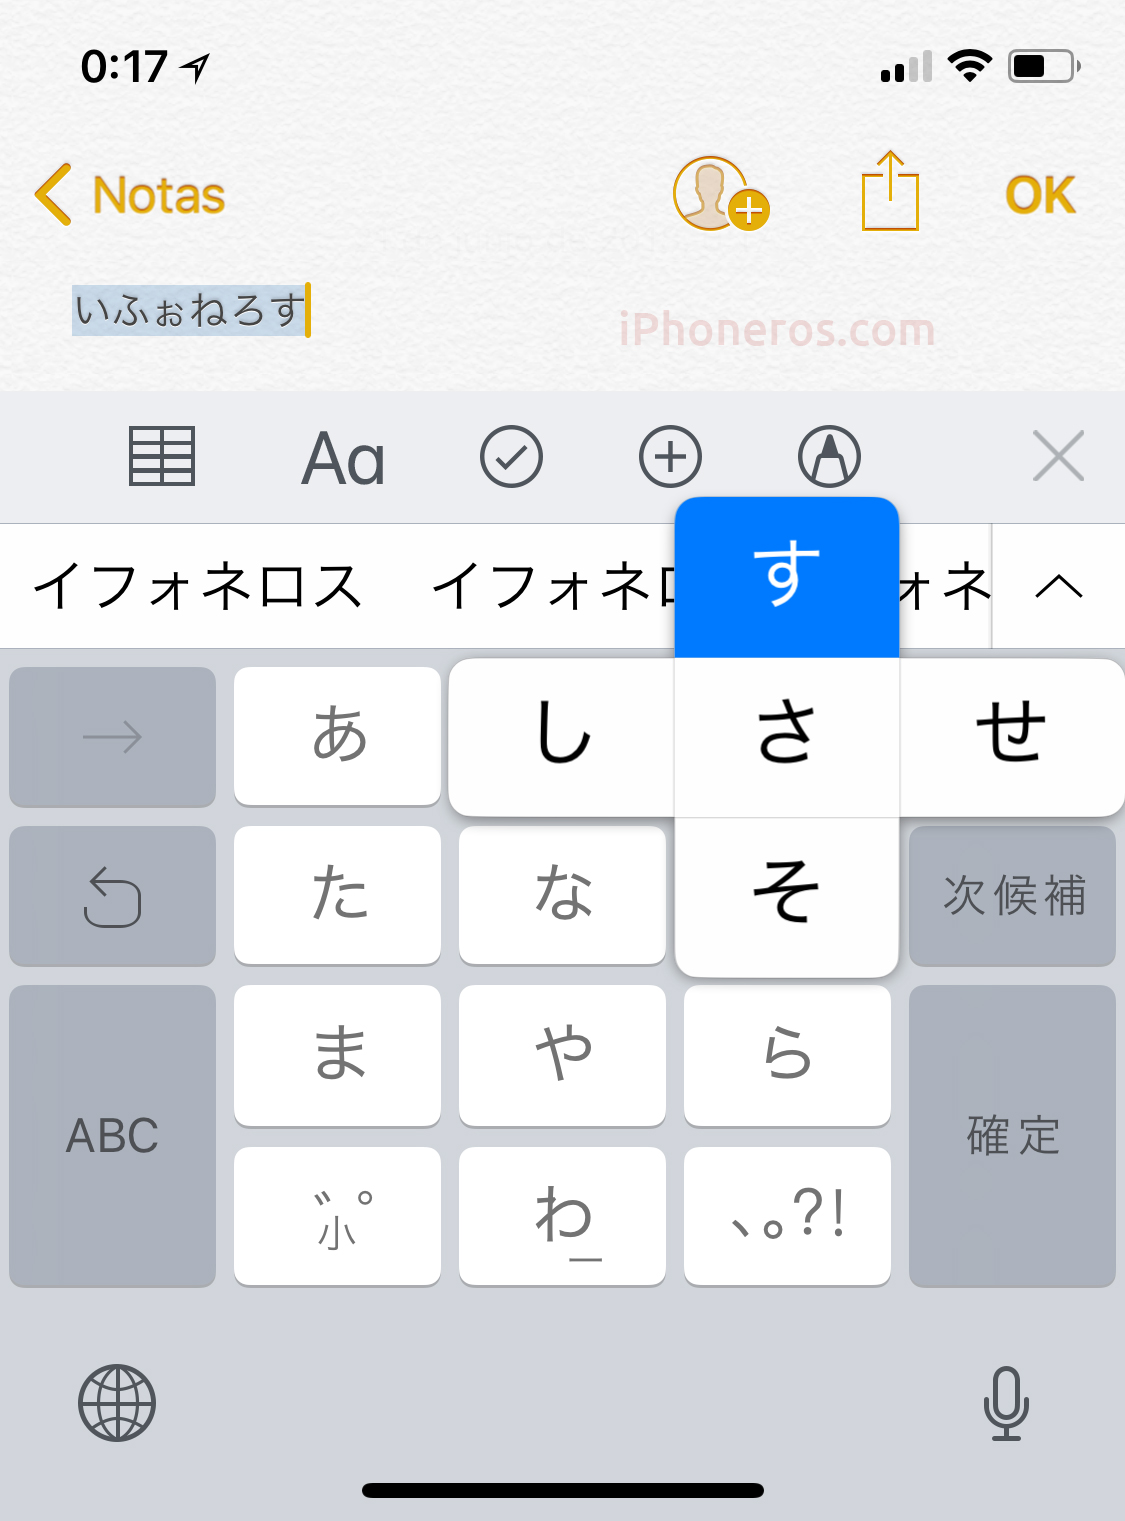 Teclado virtual japonés de iOS